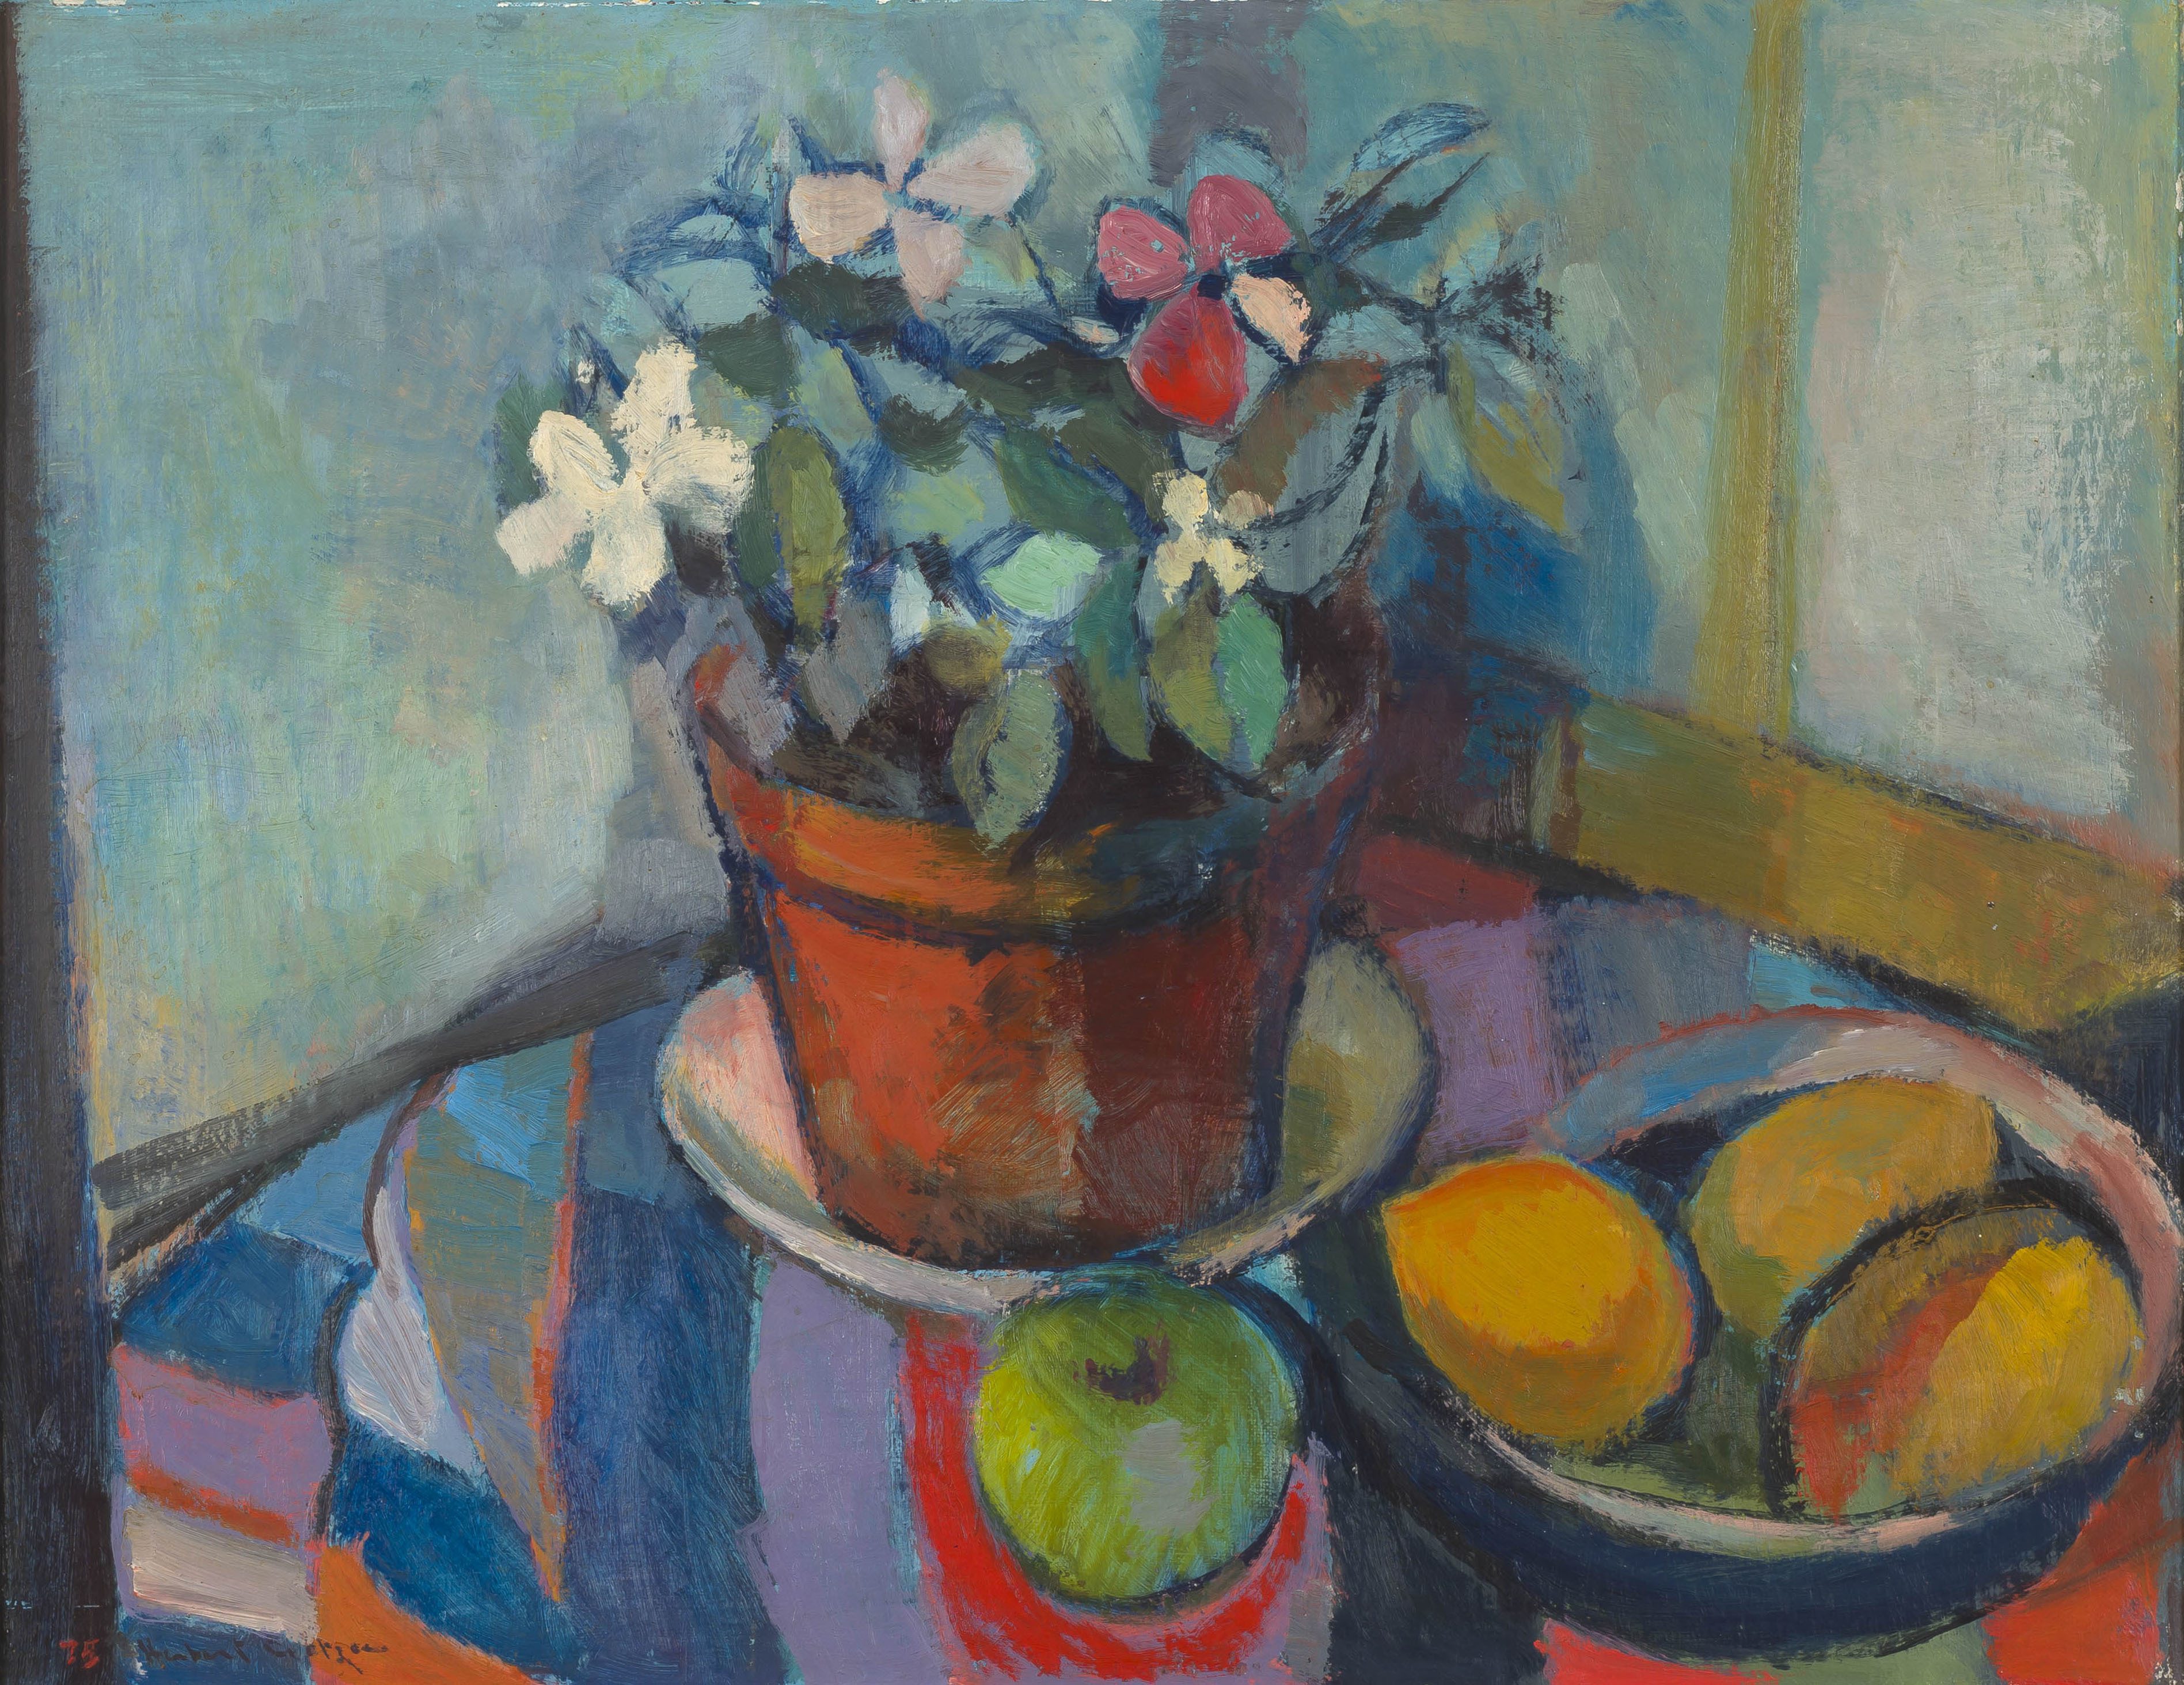 Herbert Coetzee; Pot Plant and Fruit in Bowl